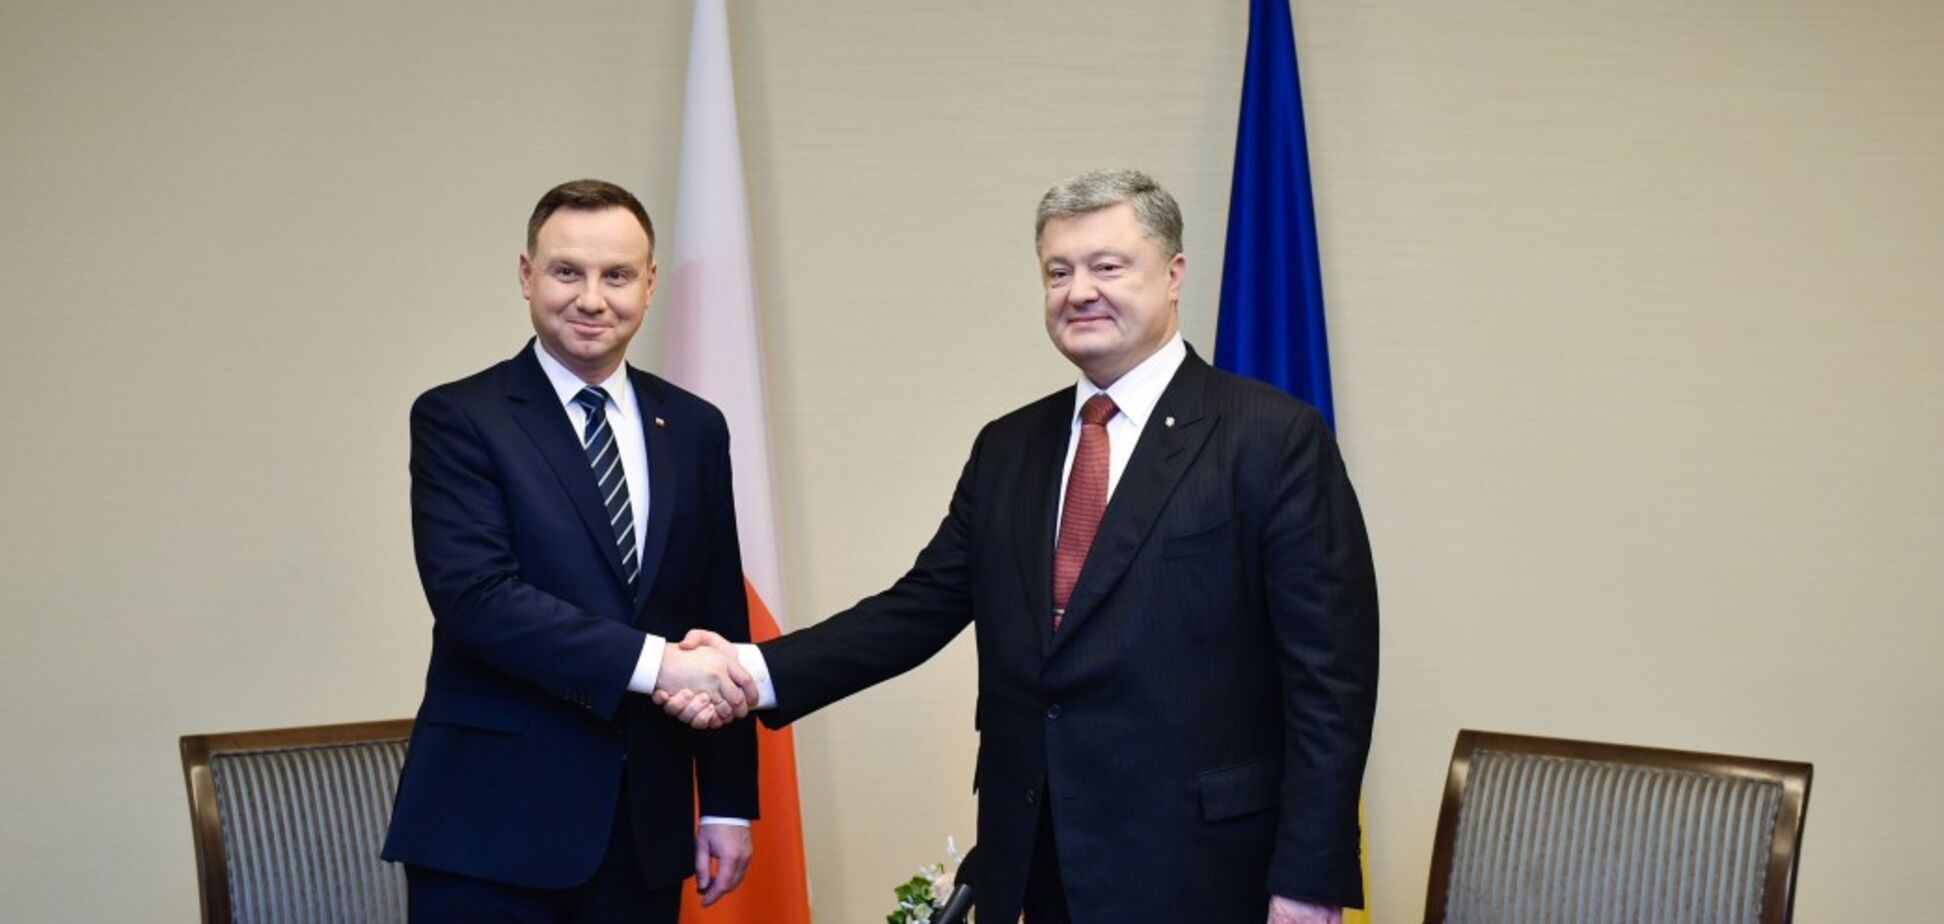 'Историю мы не изменим': Порошенко сделал важное заявление о конфликте с Польшей